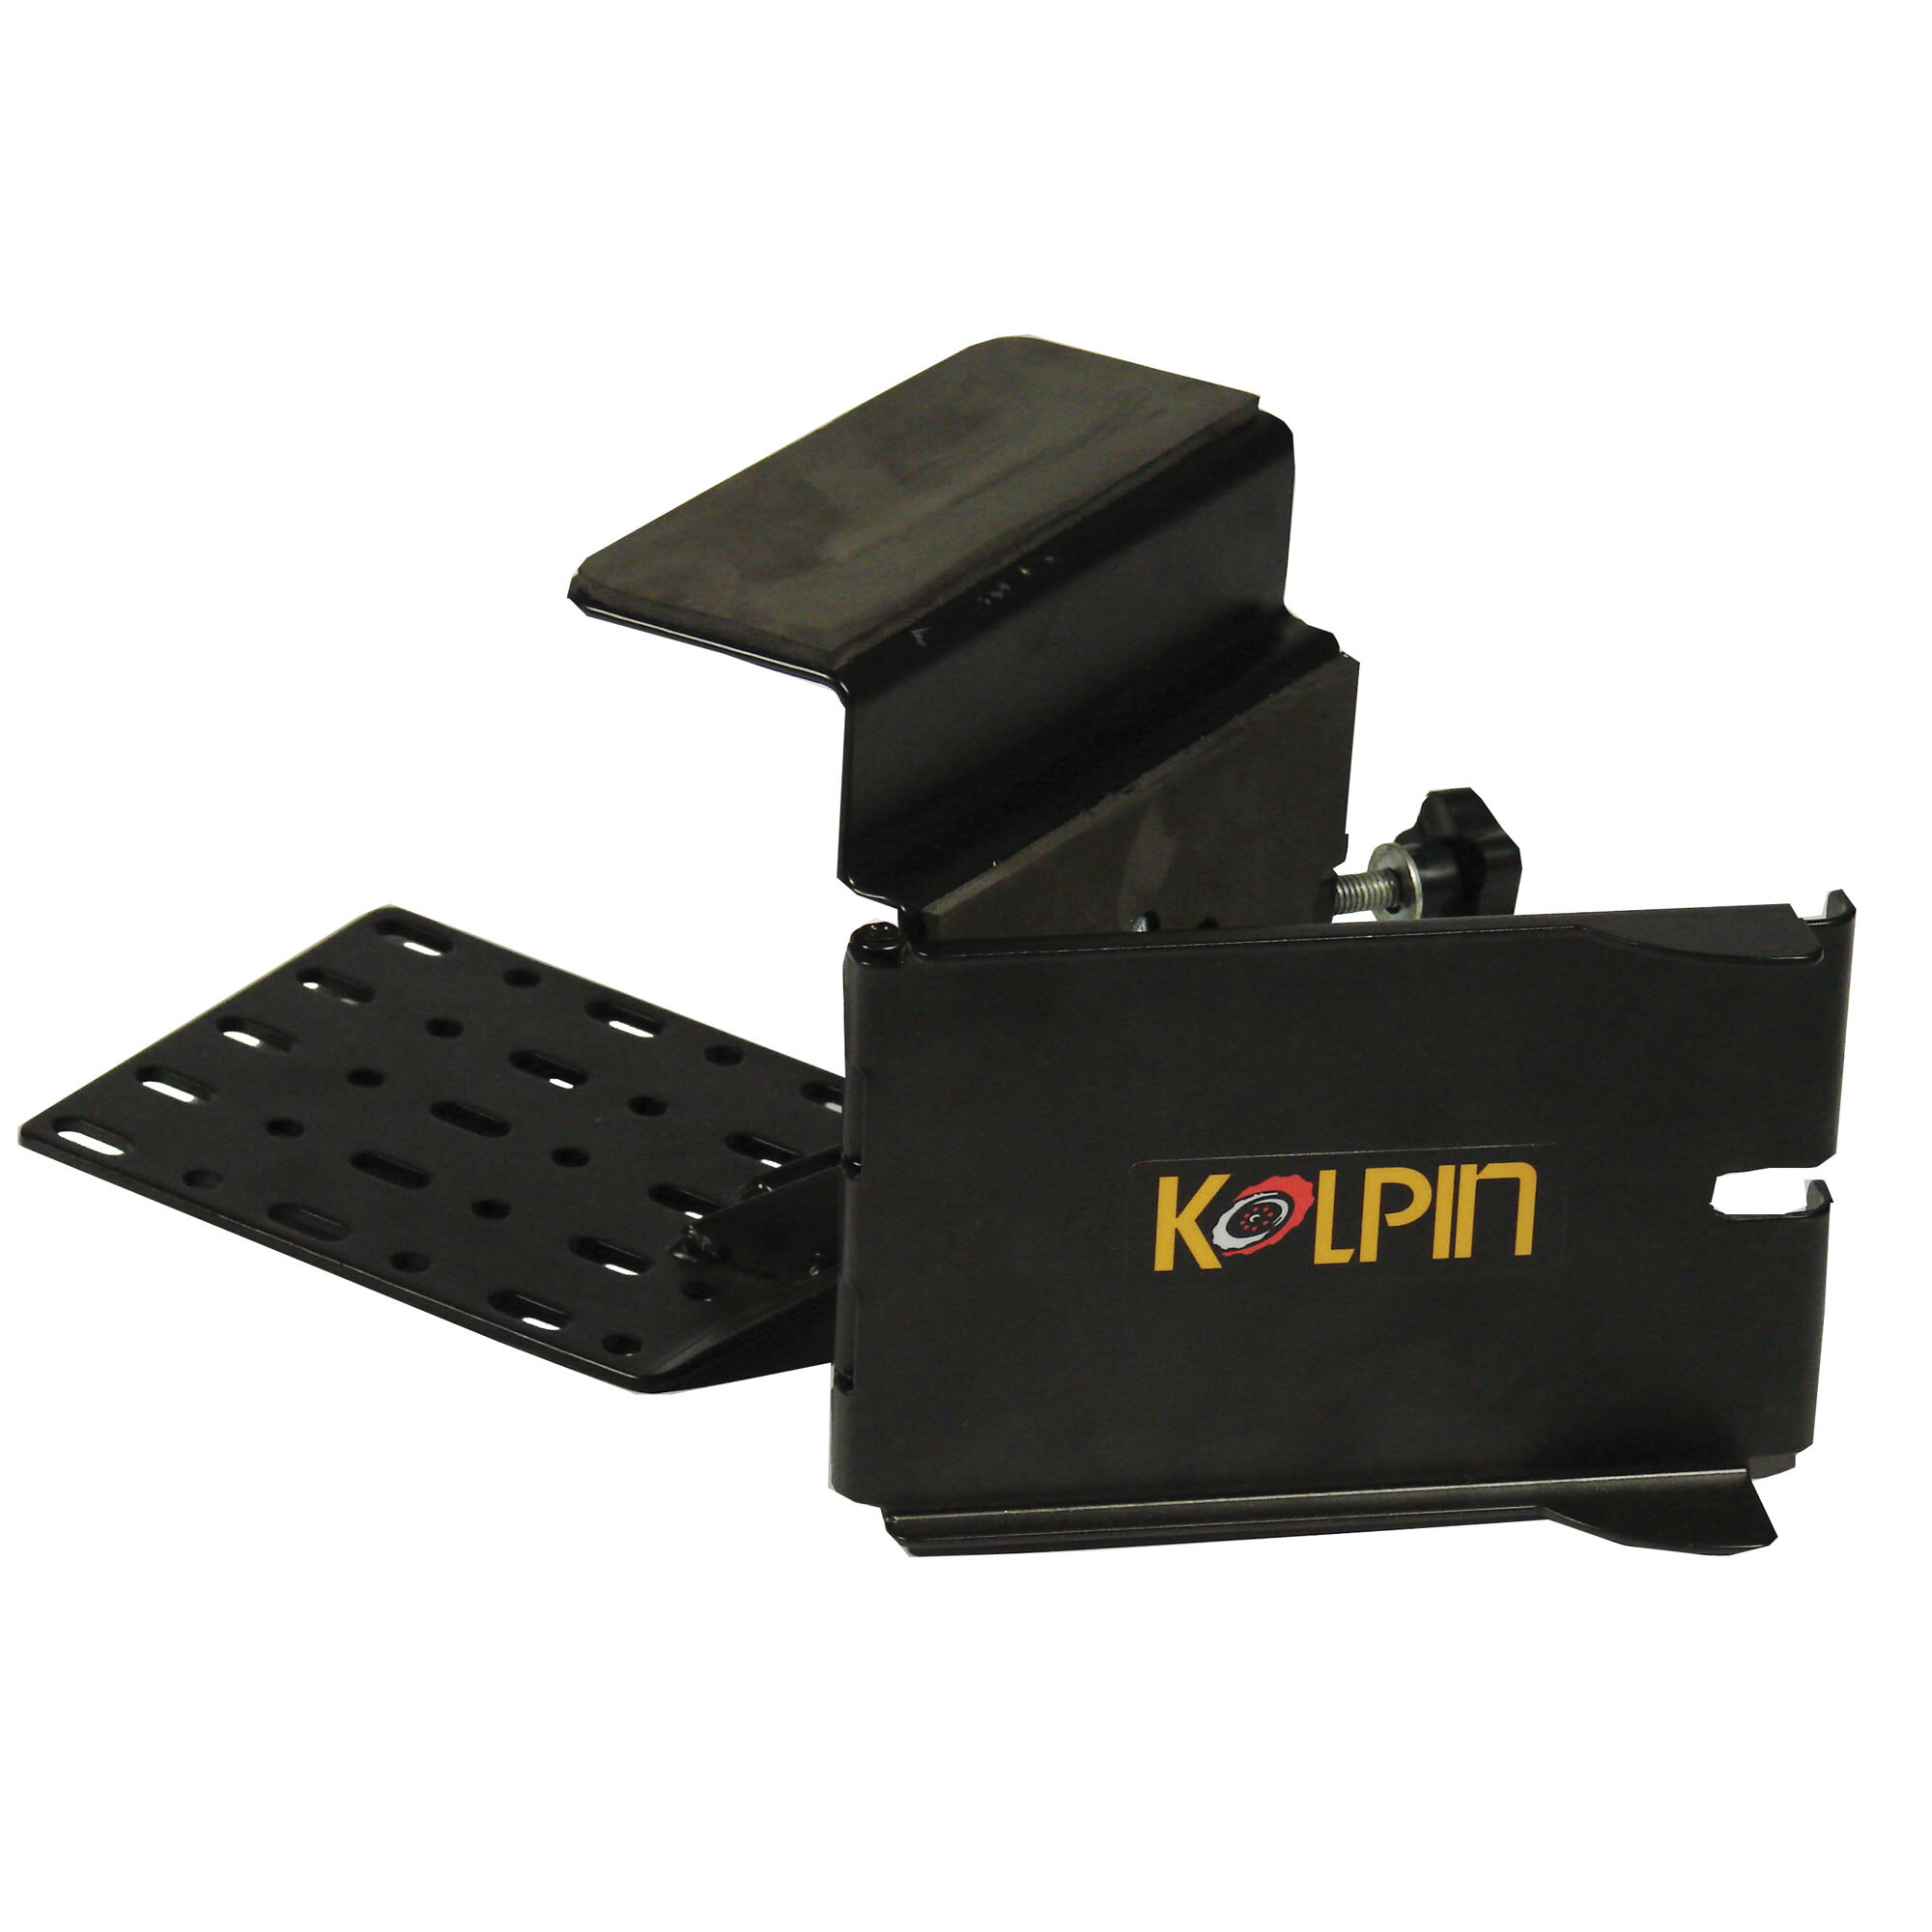 Kolpin® Saw Press Mount